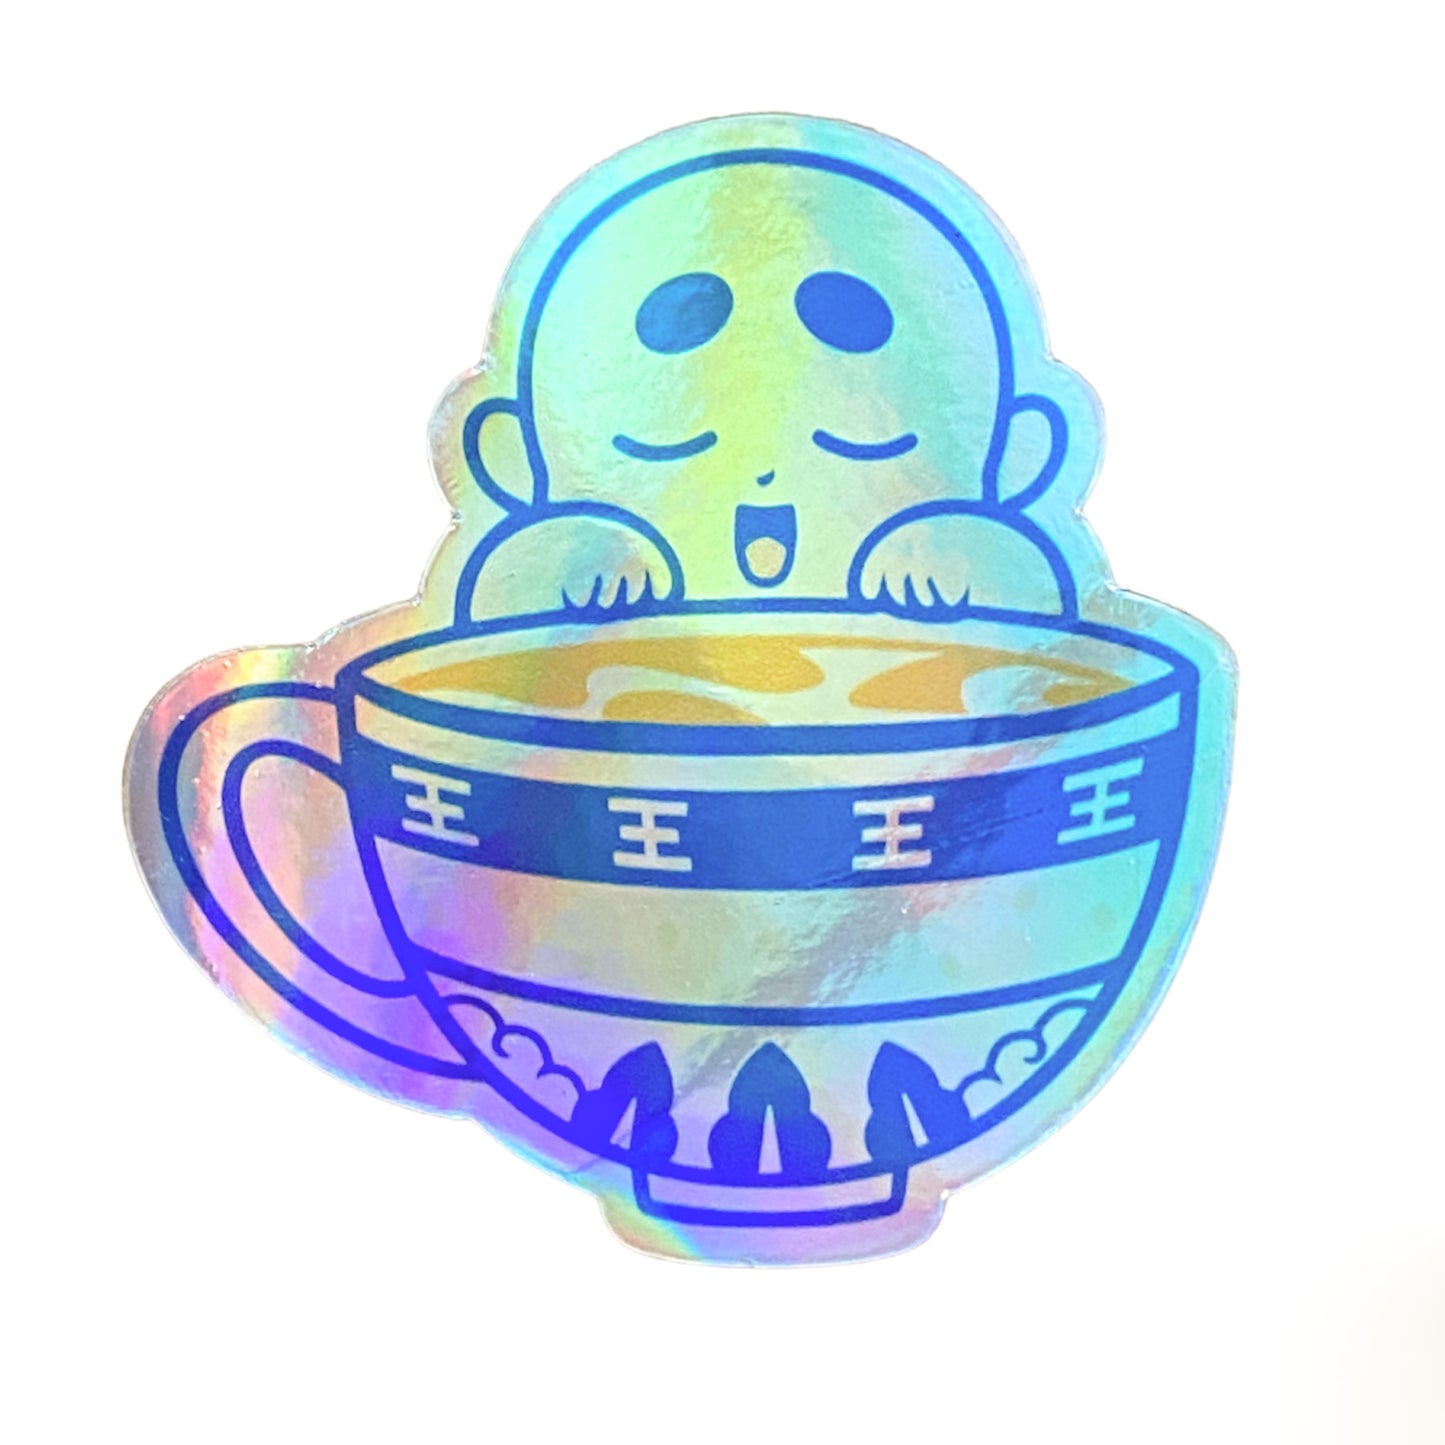 Chunky Tea Club Baby Teacup Sticker